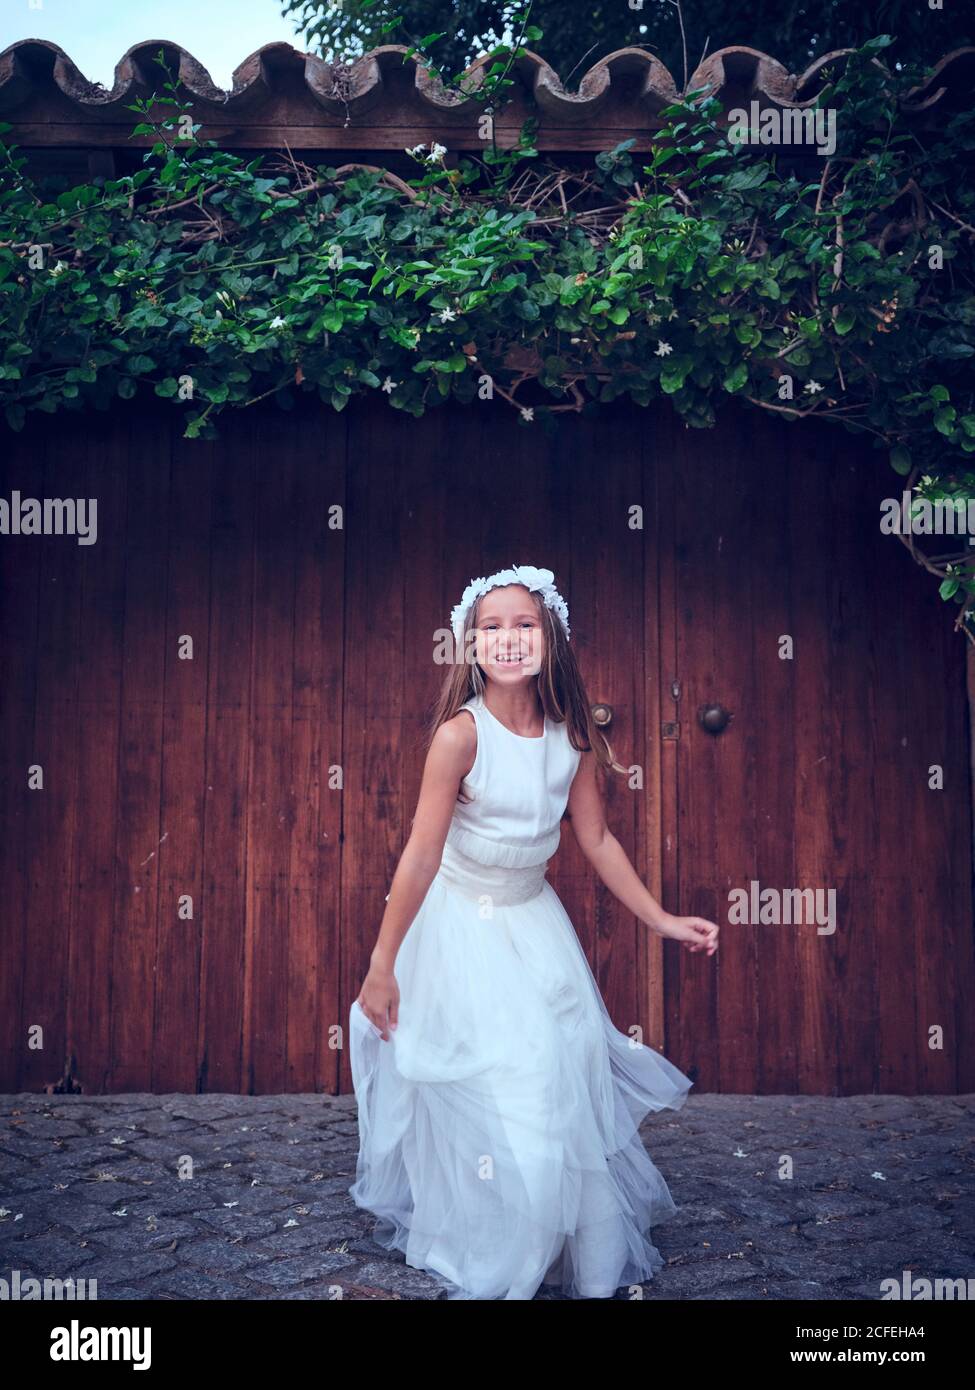 Nettes kleines Mädchen in weißen langen Kleid und Stirnband springen In der Nähe einer Holztür mit Efeu, der die Kamera anschaut Stockfoto